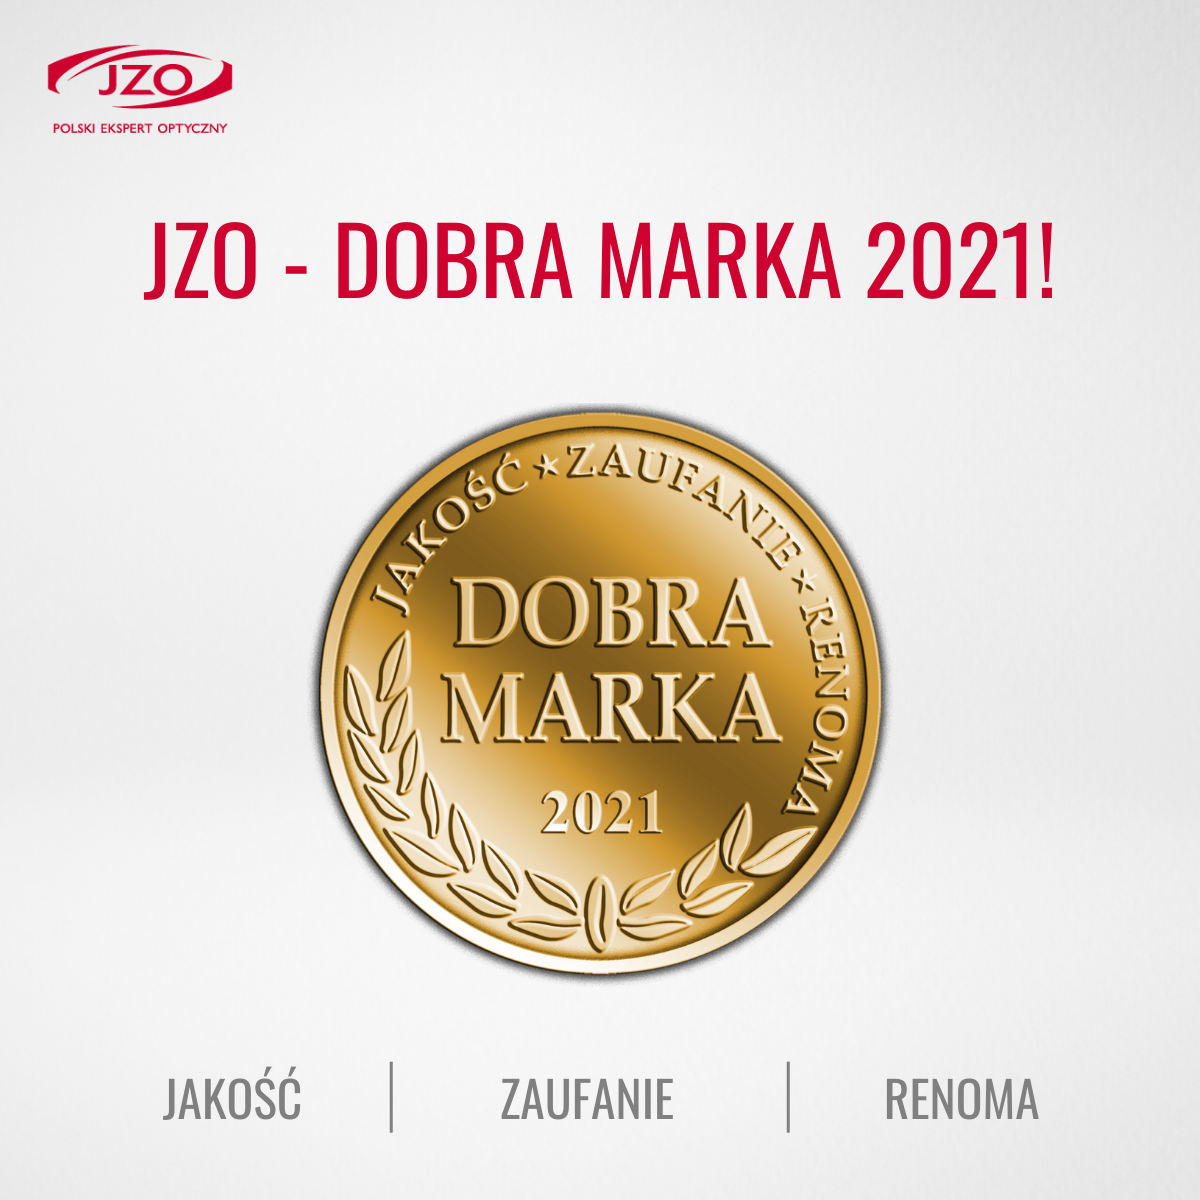 JZO zostało uhonorowane nagrodą DOBRA MARKA 2021